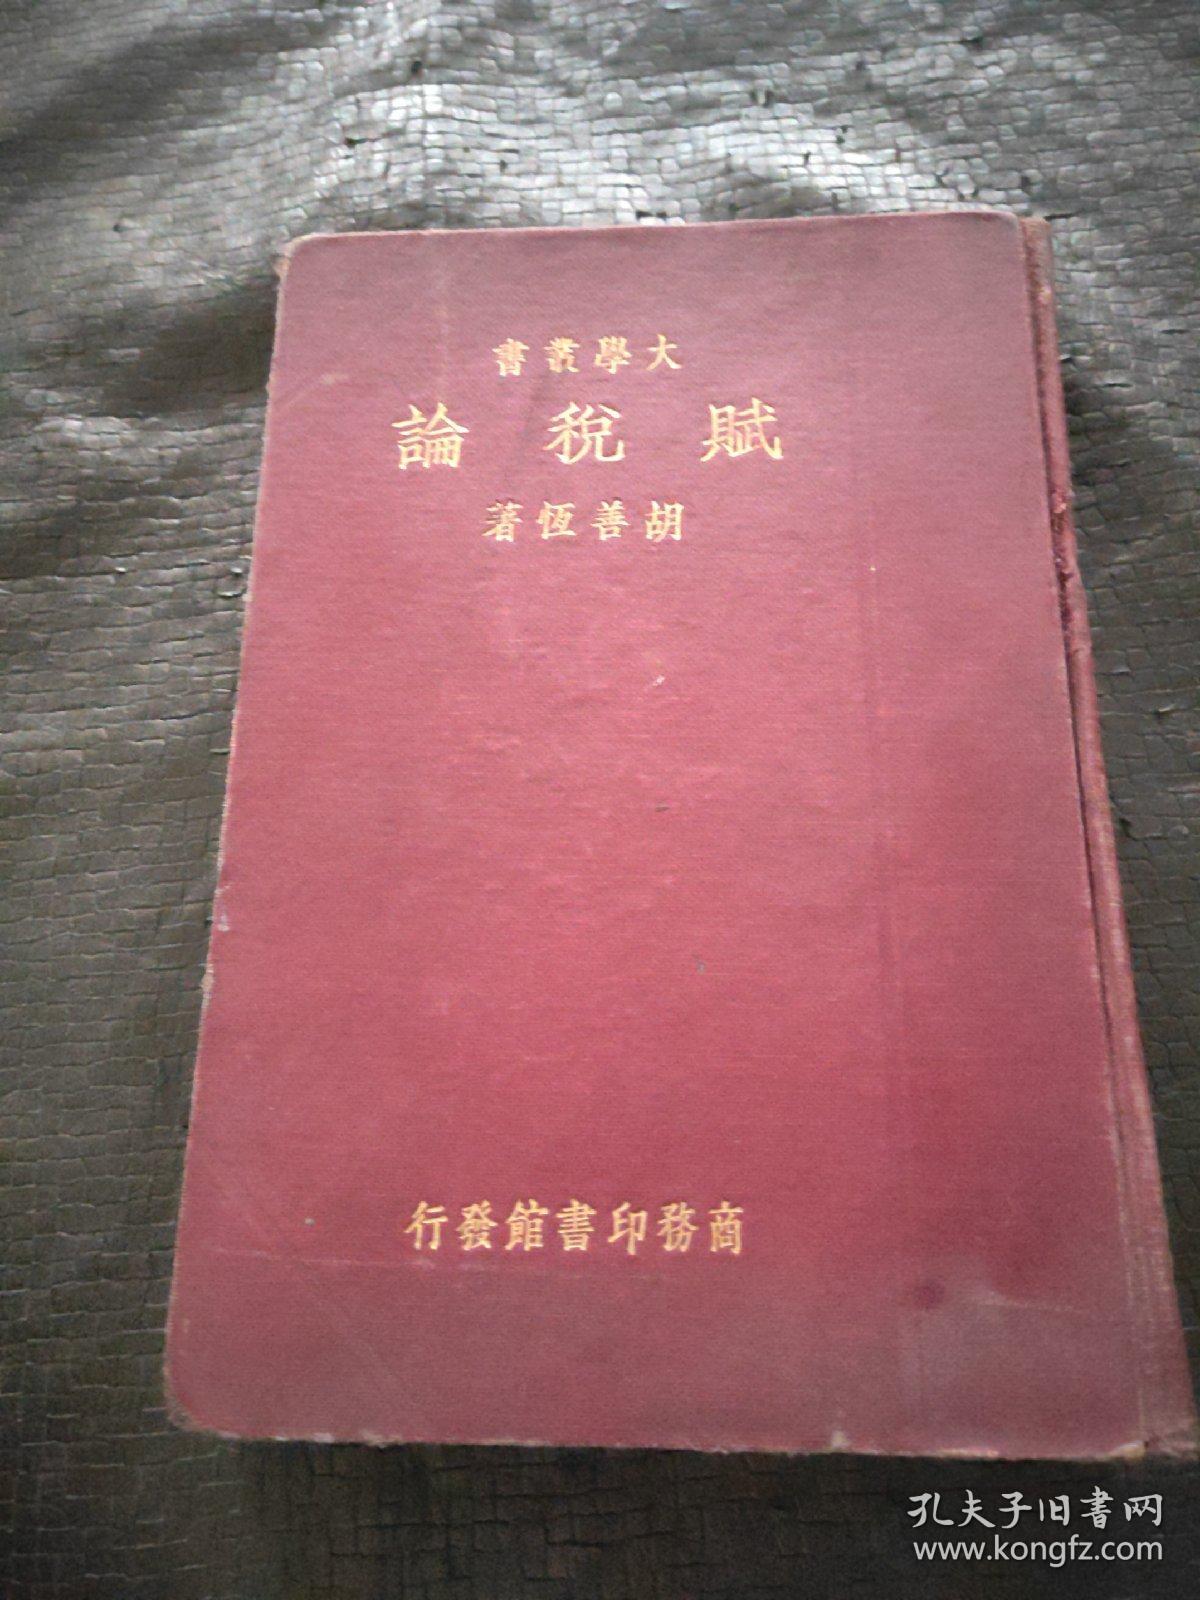 中华民国二十三年十一月出版:大学丛书 赋税论  精装 现货 当天发货 书品如图 避免争议